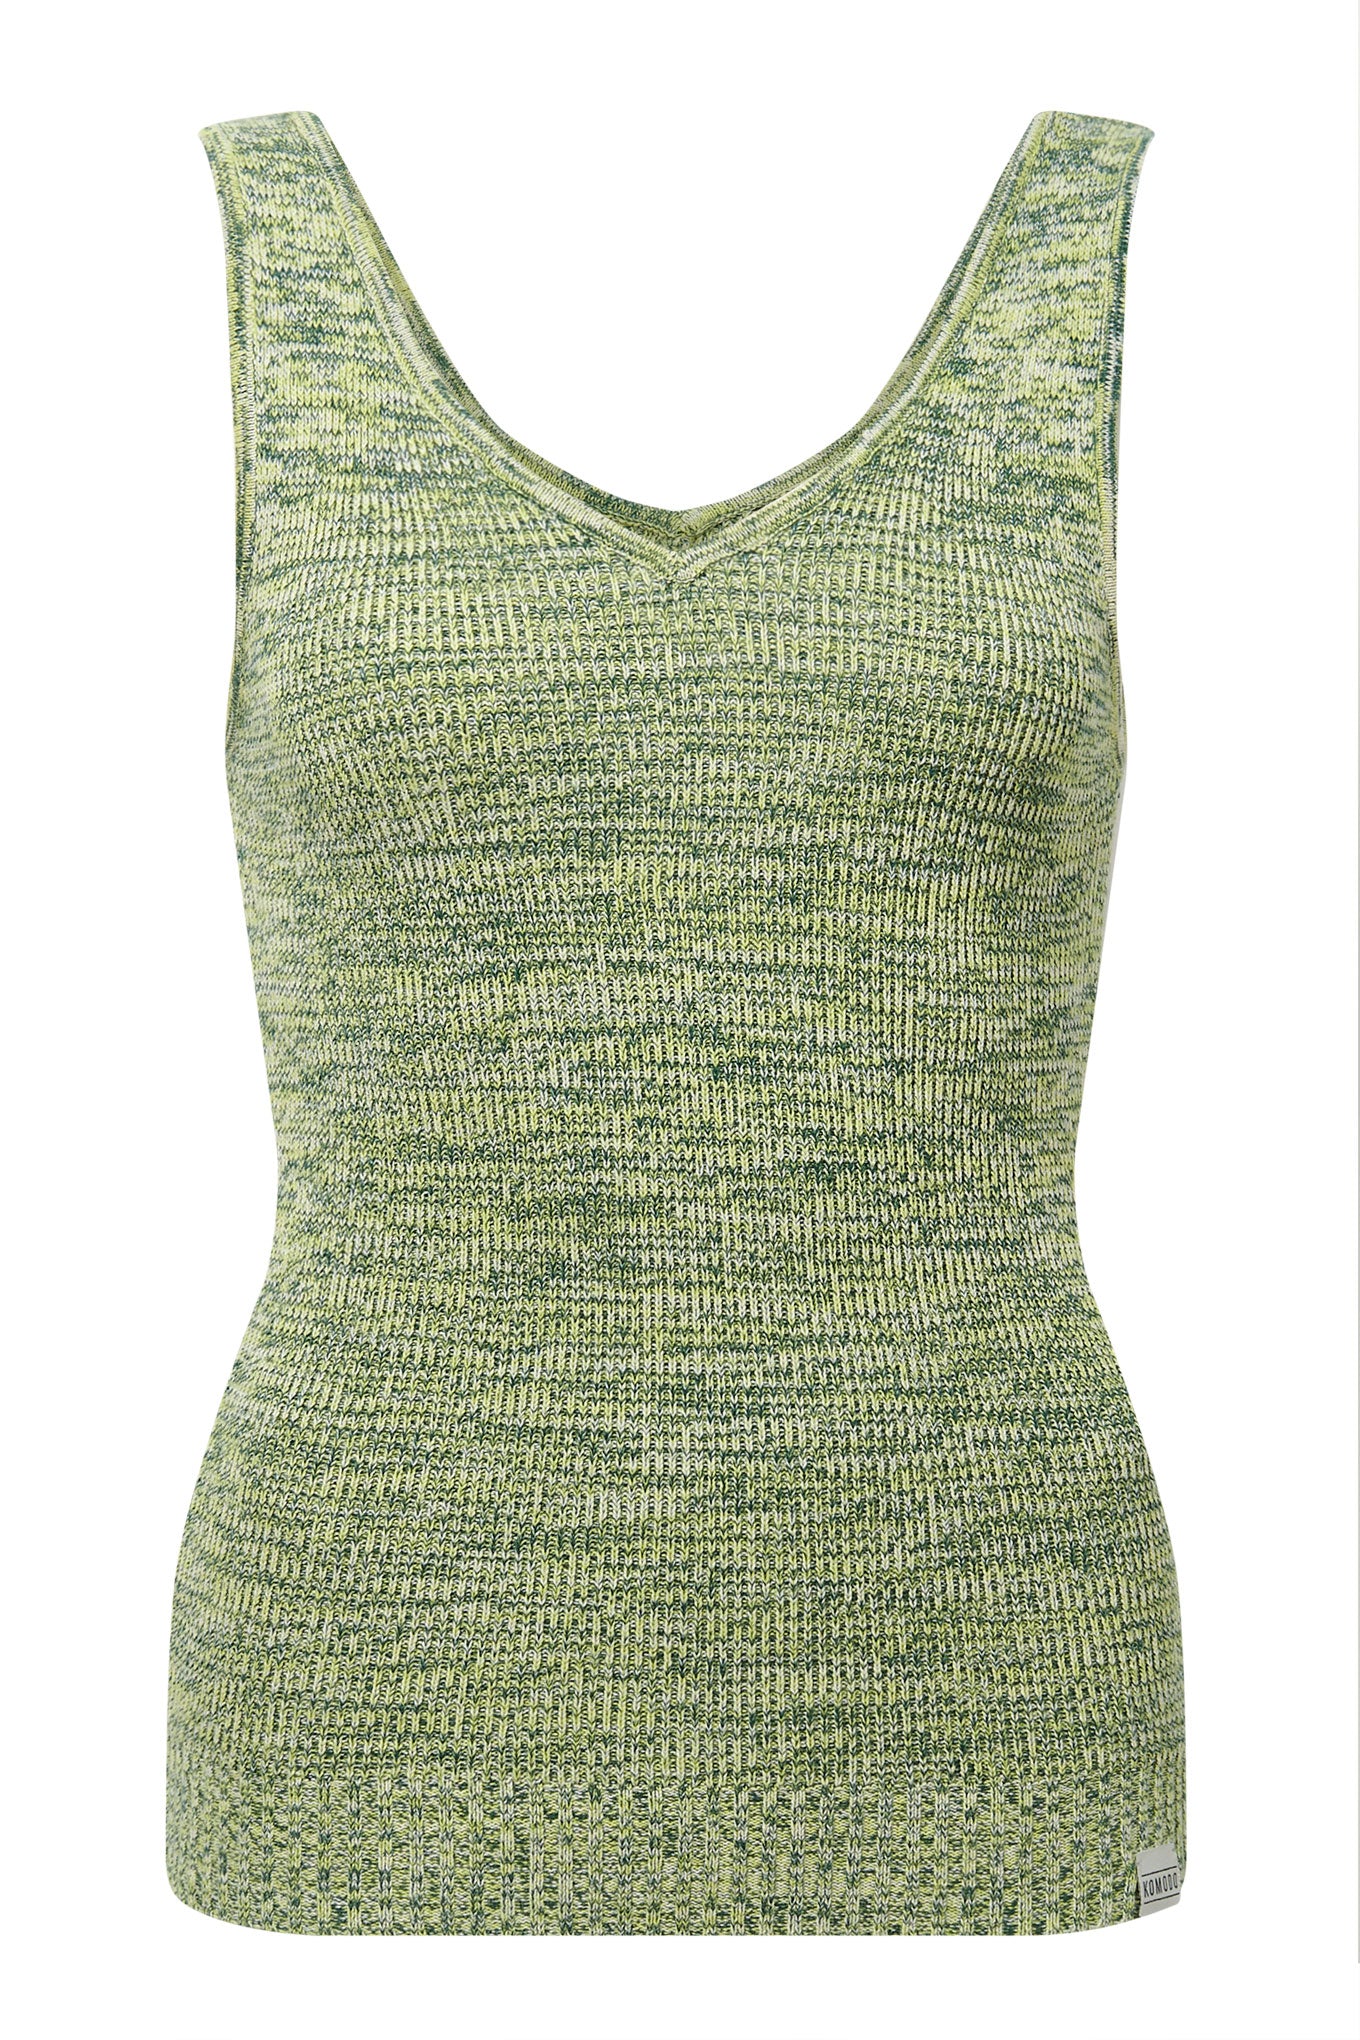 YANA - Organic Cotton Vest Lime Space dye